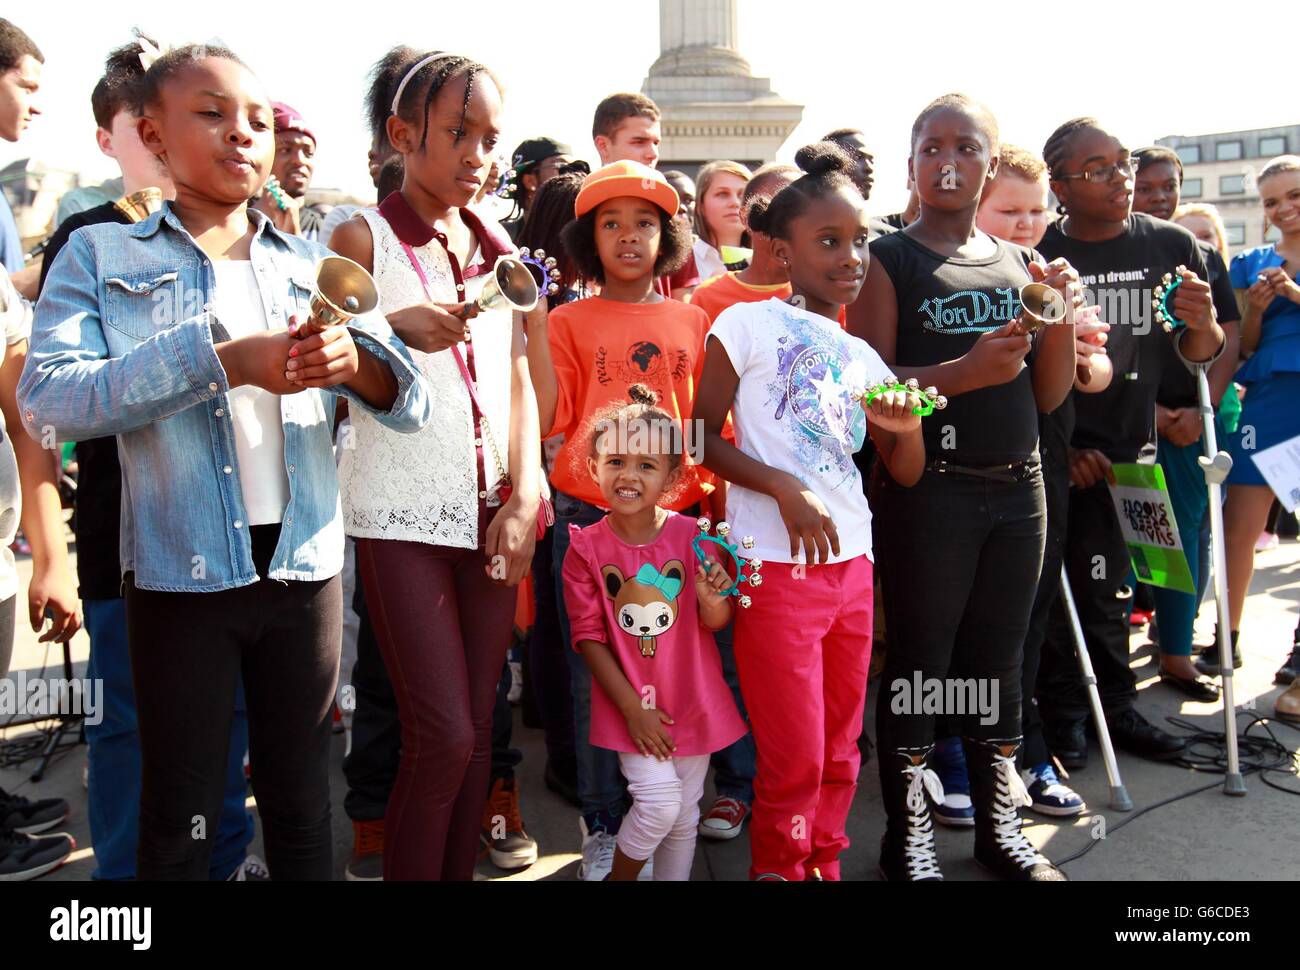 Fünfzig junge Glockenläger begehen den 50. Jahrestag der Rede von Martin Luther King "Ich habe einen Traum". Glocken läuteten um 15 Uhr - die Stunde, in der Dr. King seine berühmte Rede hielt - vor ähnlichen gedenkfeiern in Washington. Stockfoto